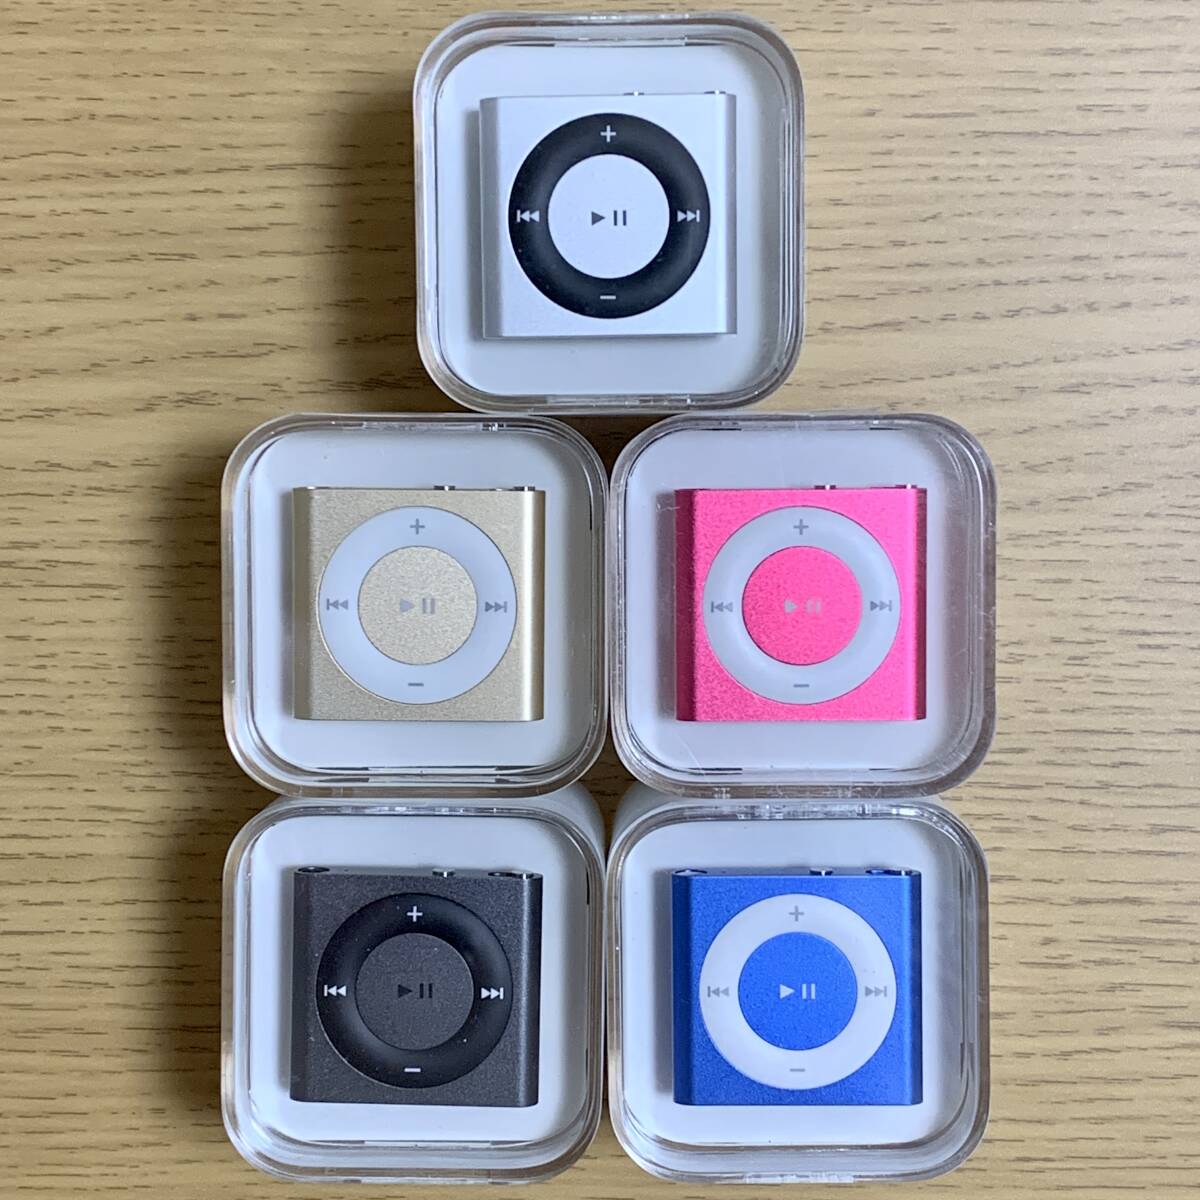 ★新品未開封★Apple アップル iPod shuffle 第4世代 2GB 本体 フルセット5種 シャッフル スペースグレイ ゴールド シルバー ピンク ブルー